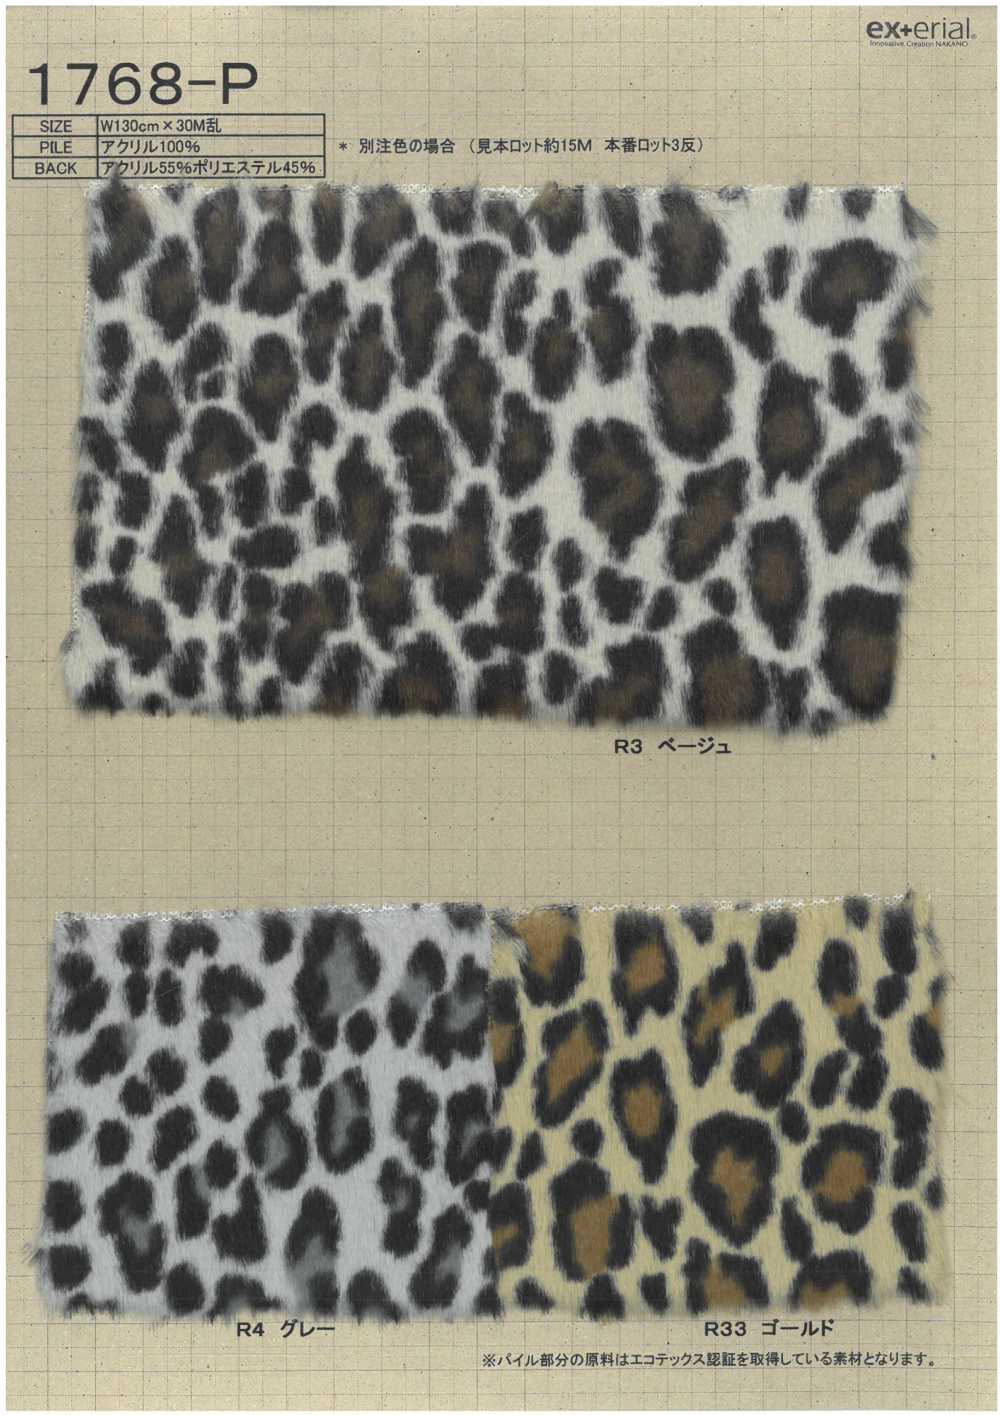 1768-P Fourrure Artisanale [léopard][Fabrication De Textile] Industrie Du Jersey Nakano